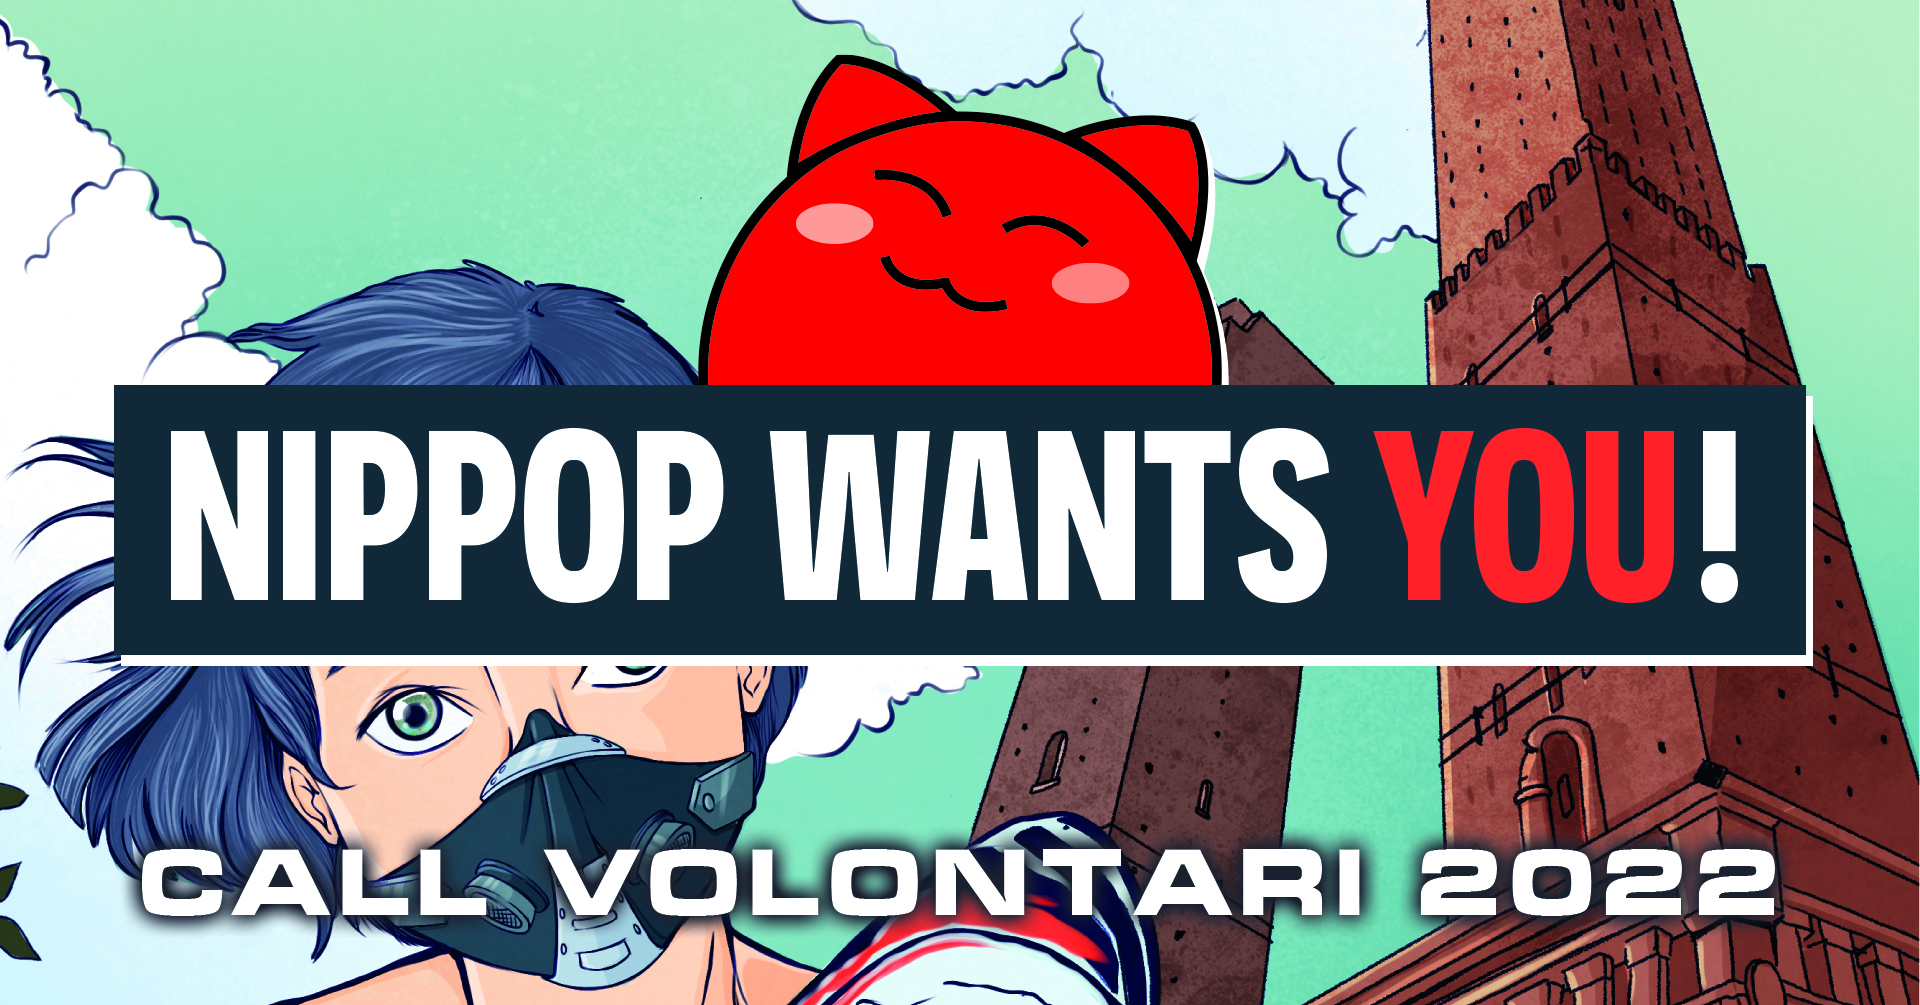 Call per Volontari: NipPop 2022 wants you!